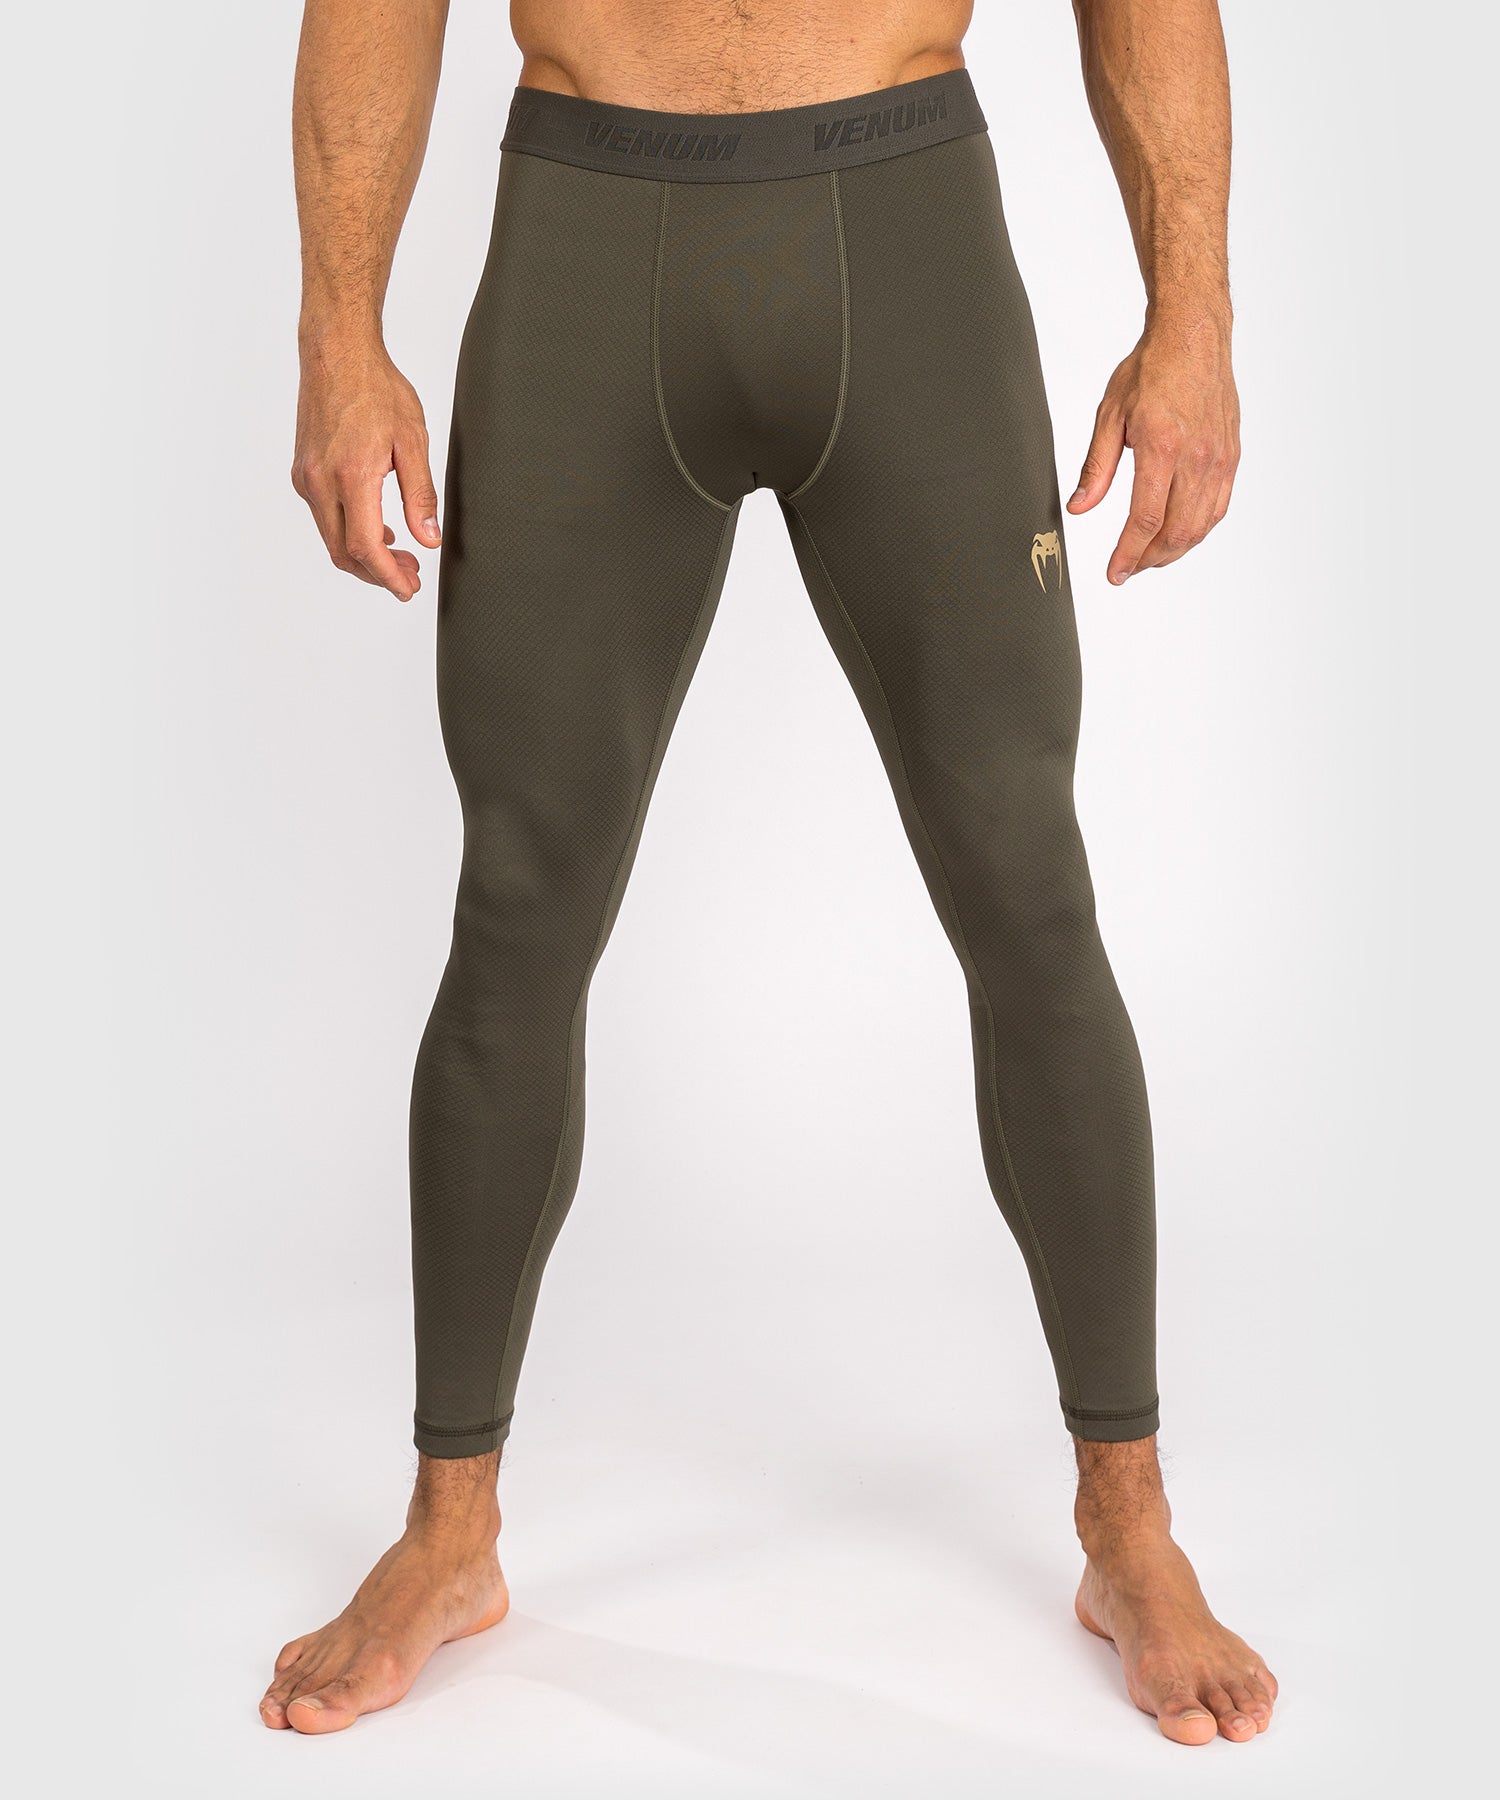 Pantalon de compression pour hommes Venum Contender - Kaki - Pantalons